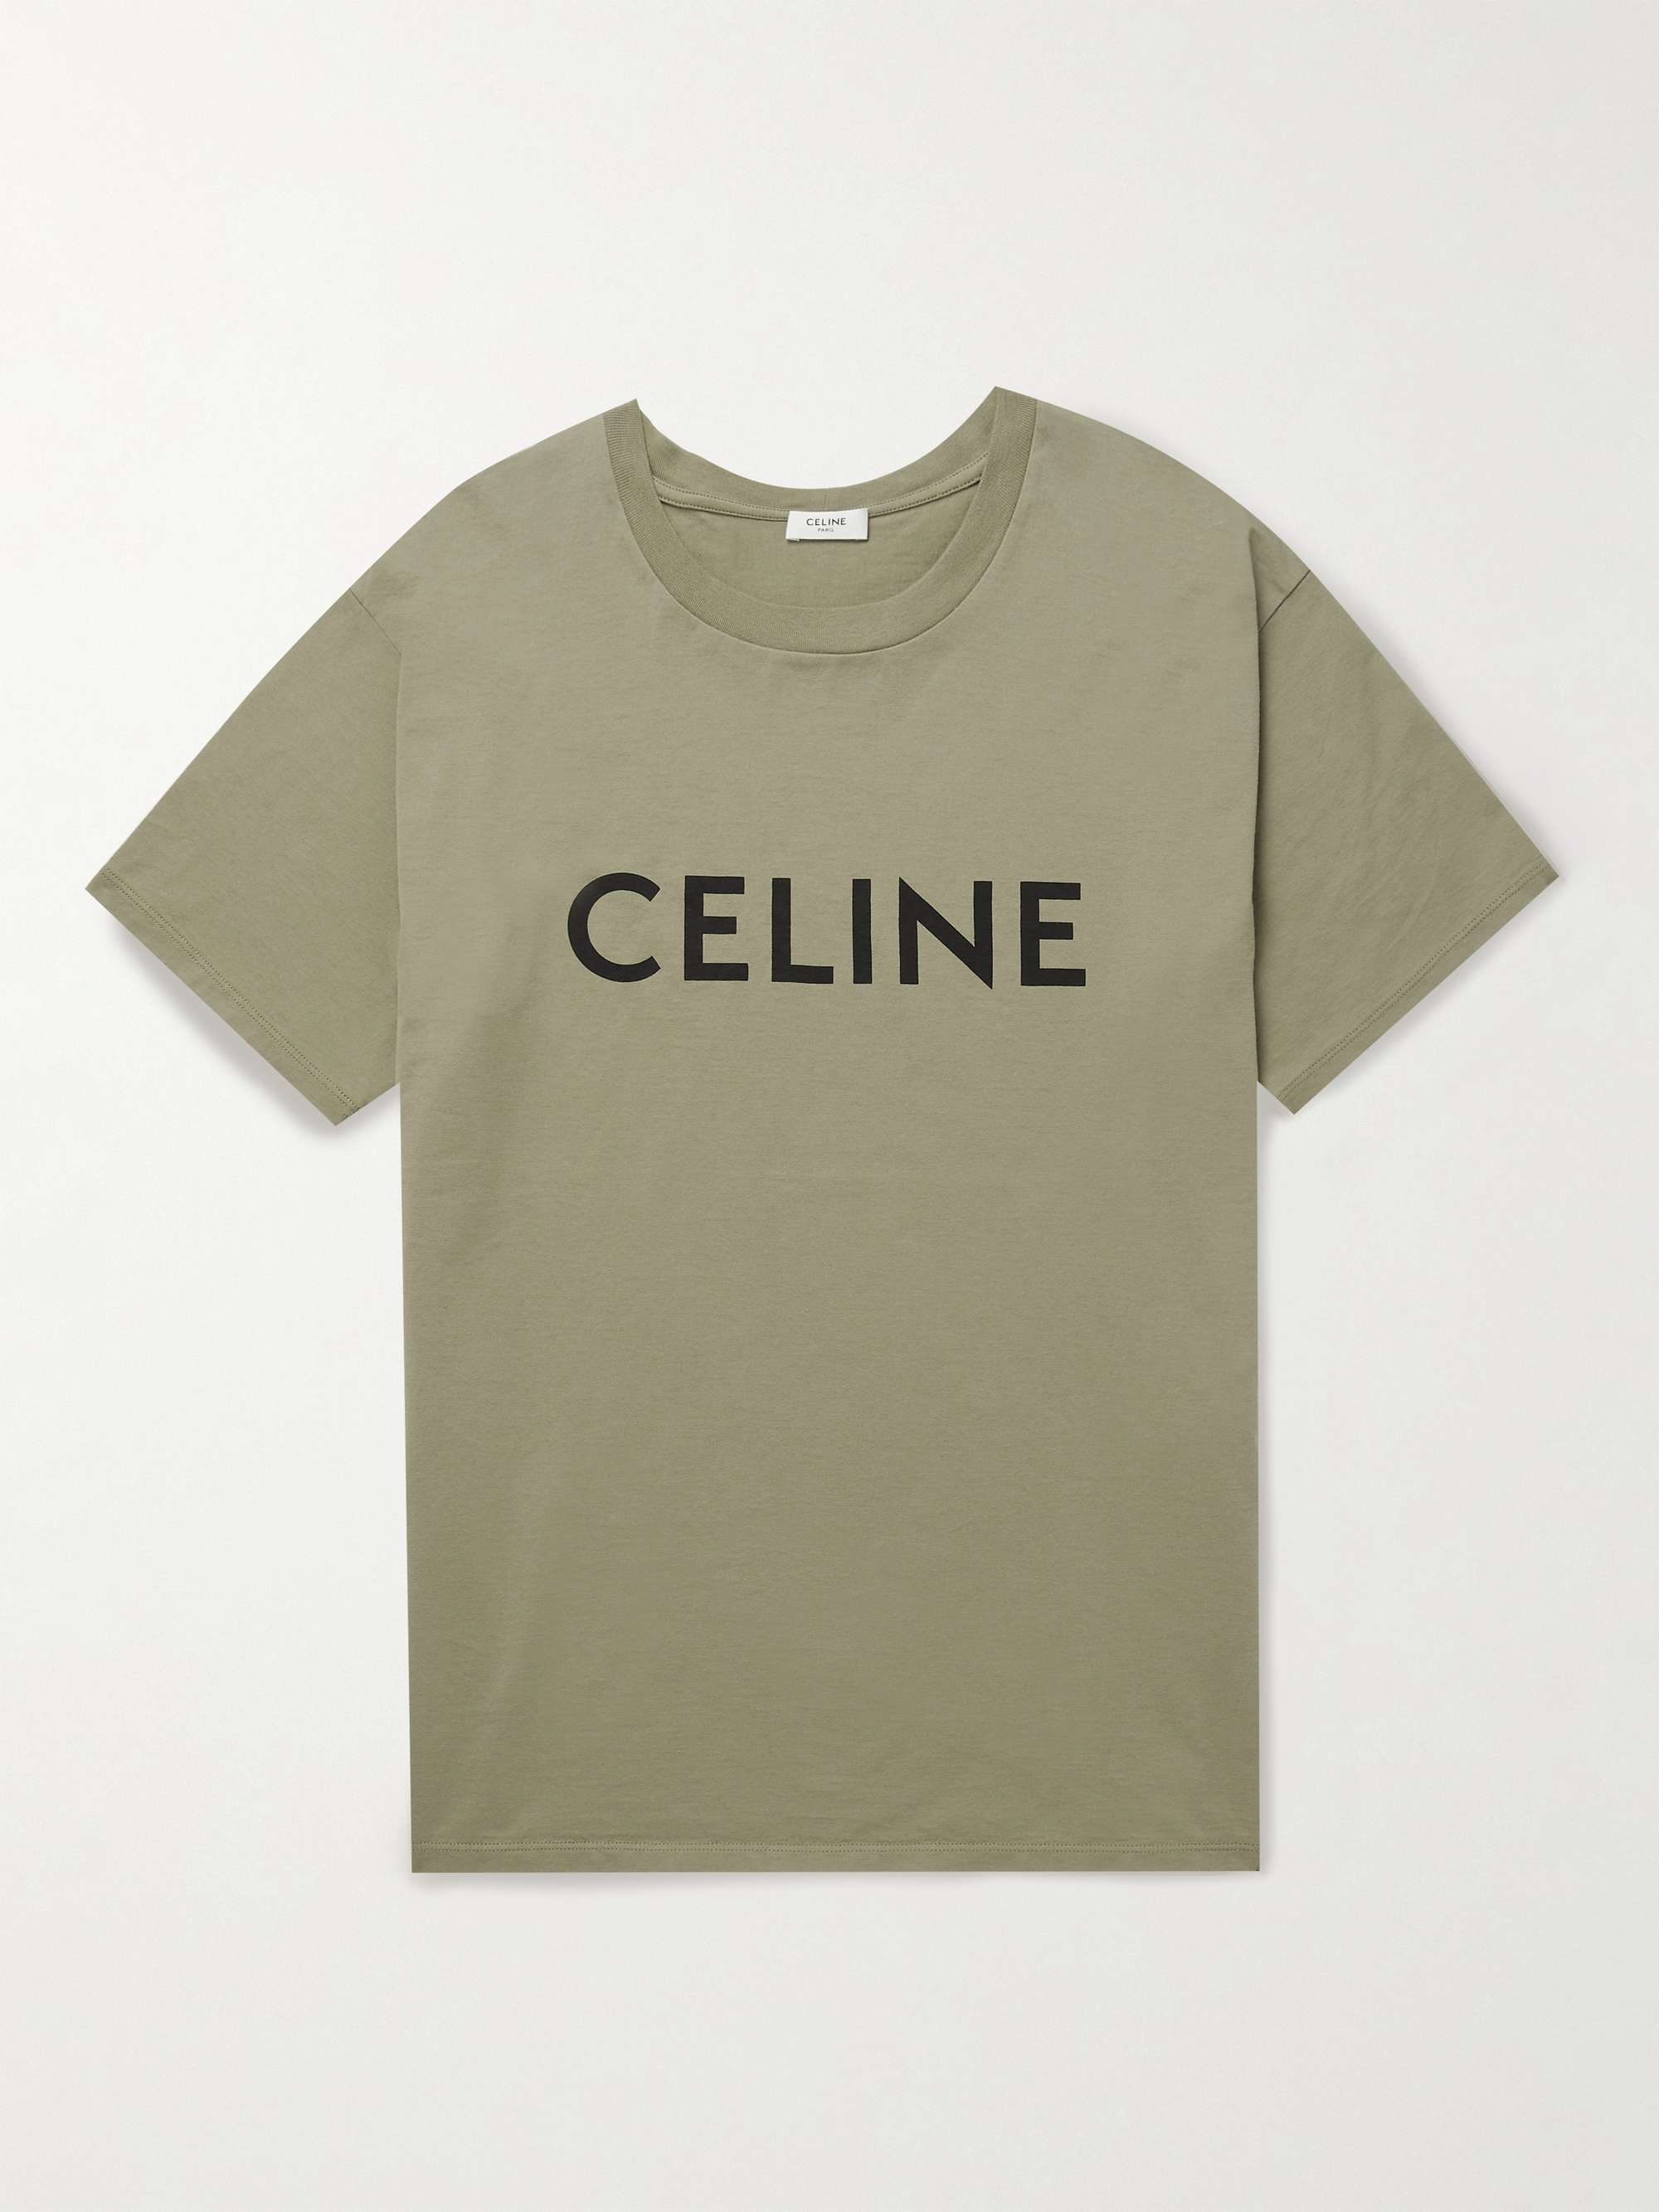 Celine t shirt